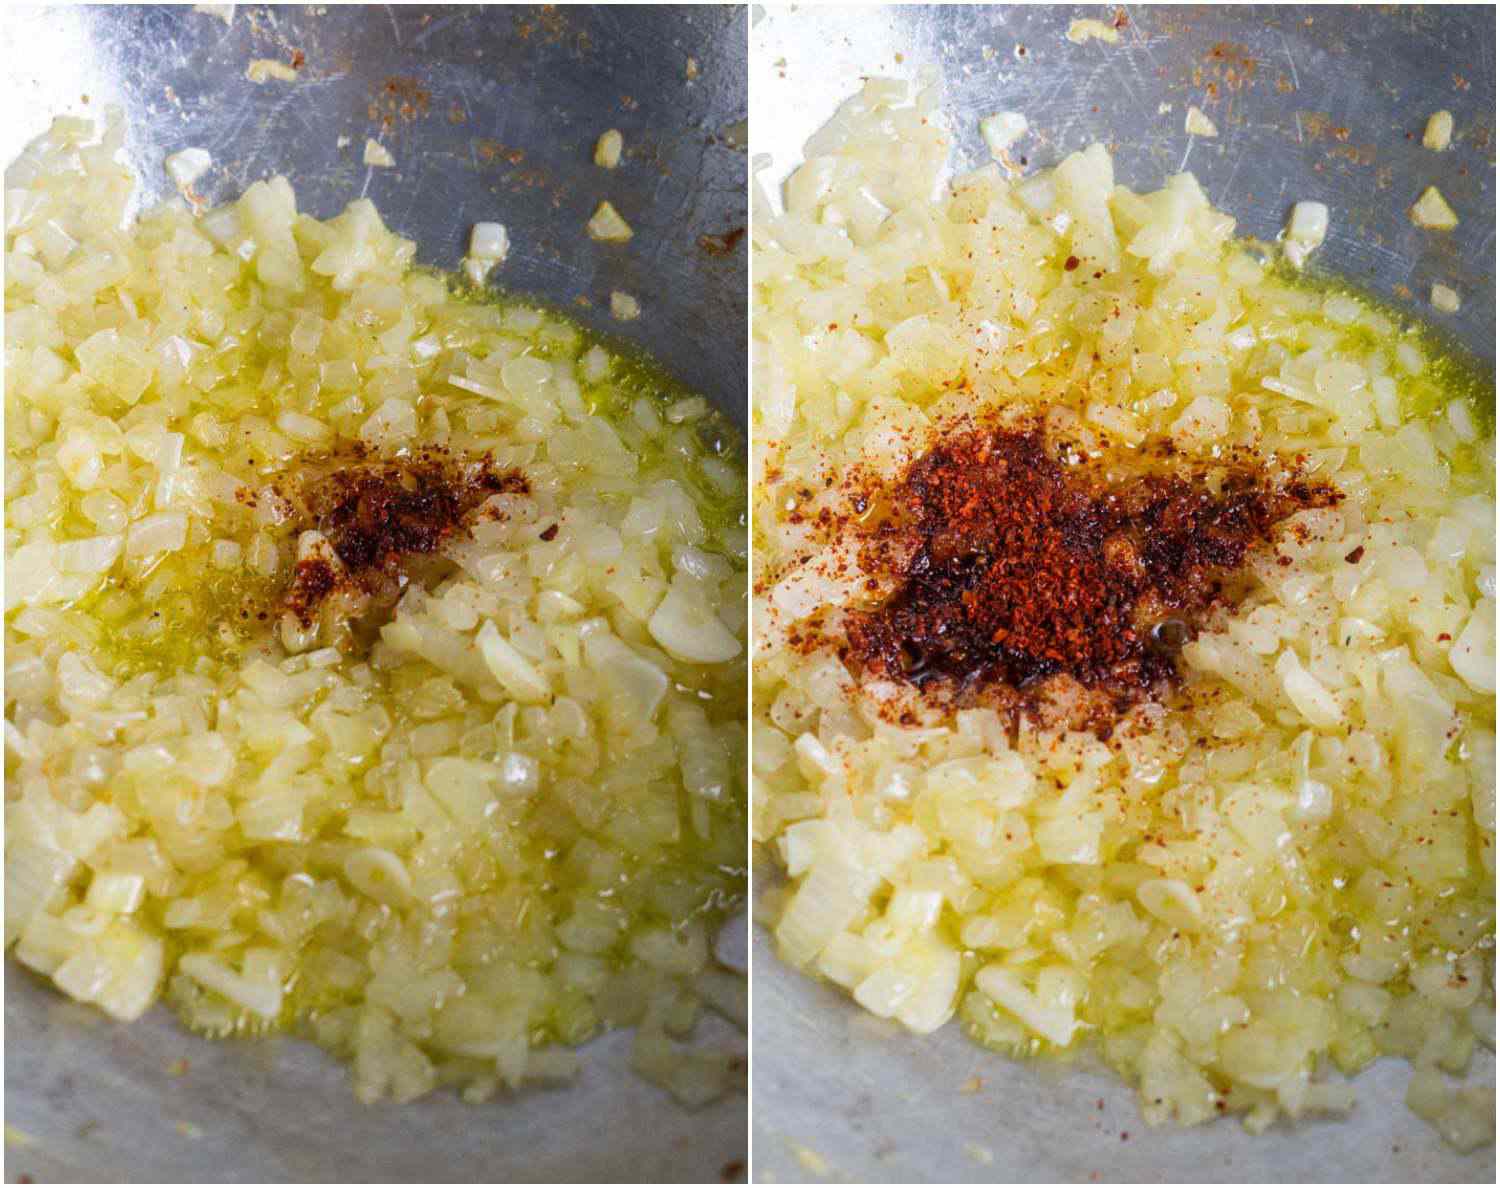 洋葱丁sautéing放在锅里的并排照片显示，最初加入了非常少量的非常辣的辣椒粉;第二张照片显示了在上面添加了大量不太热的辣椒粉，展示了如何在不自动增加热量的情况下增加辣椒粉的数量